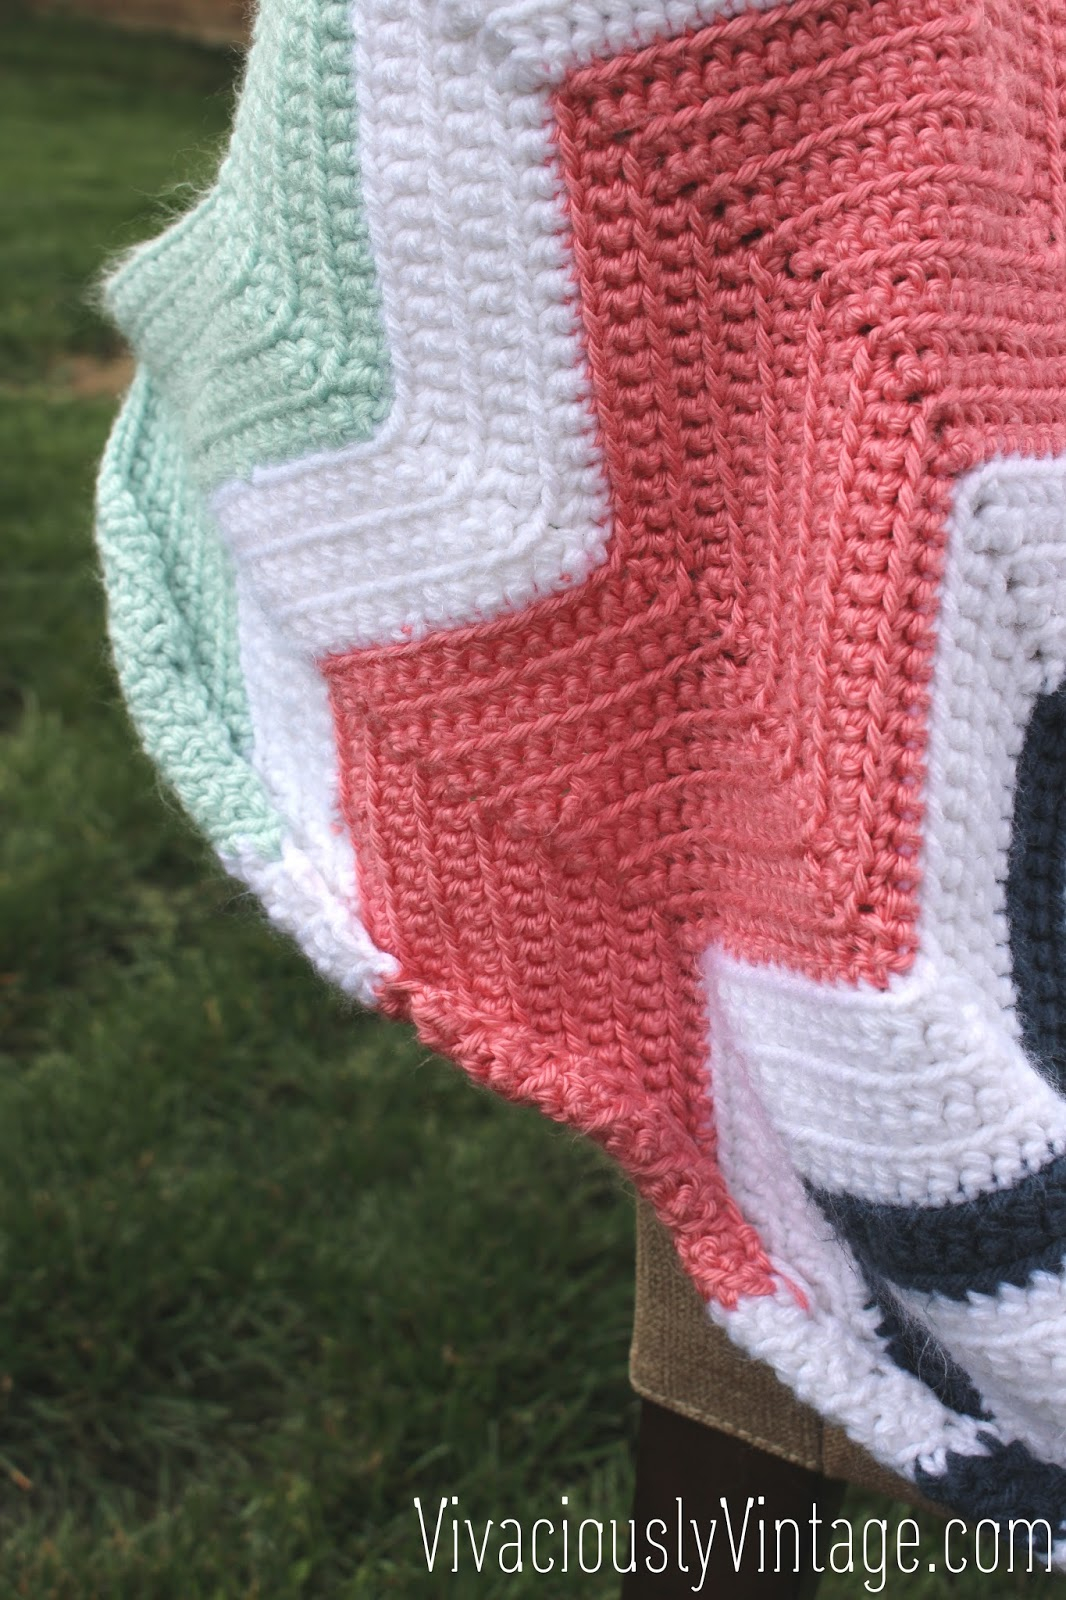 Chevron Crochet Baby Blanket Pattern Ansley Designs Easy Beginner Chevron Crochet Ba Blanket Only One